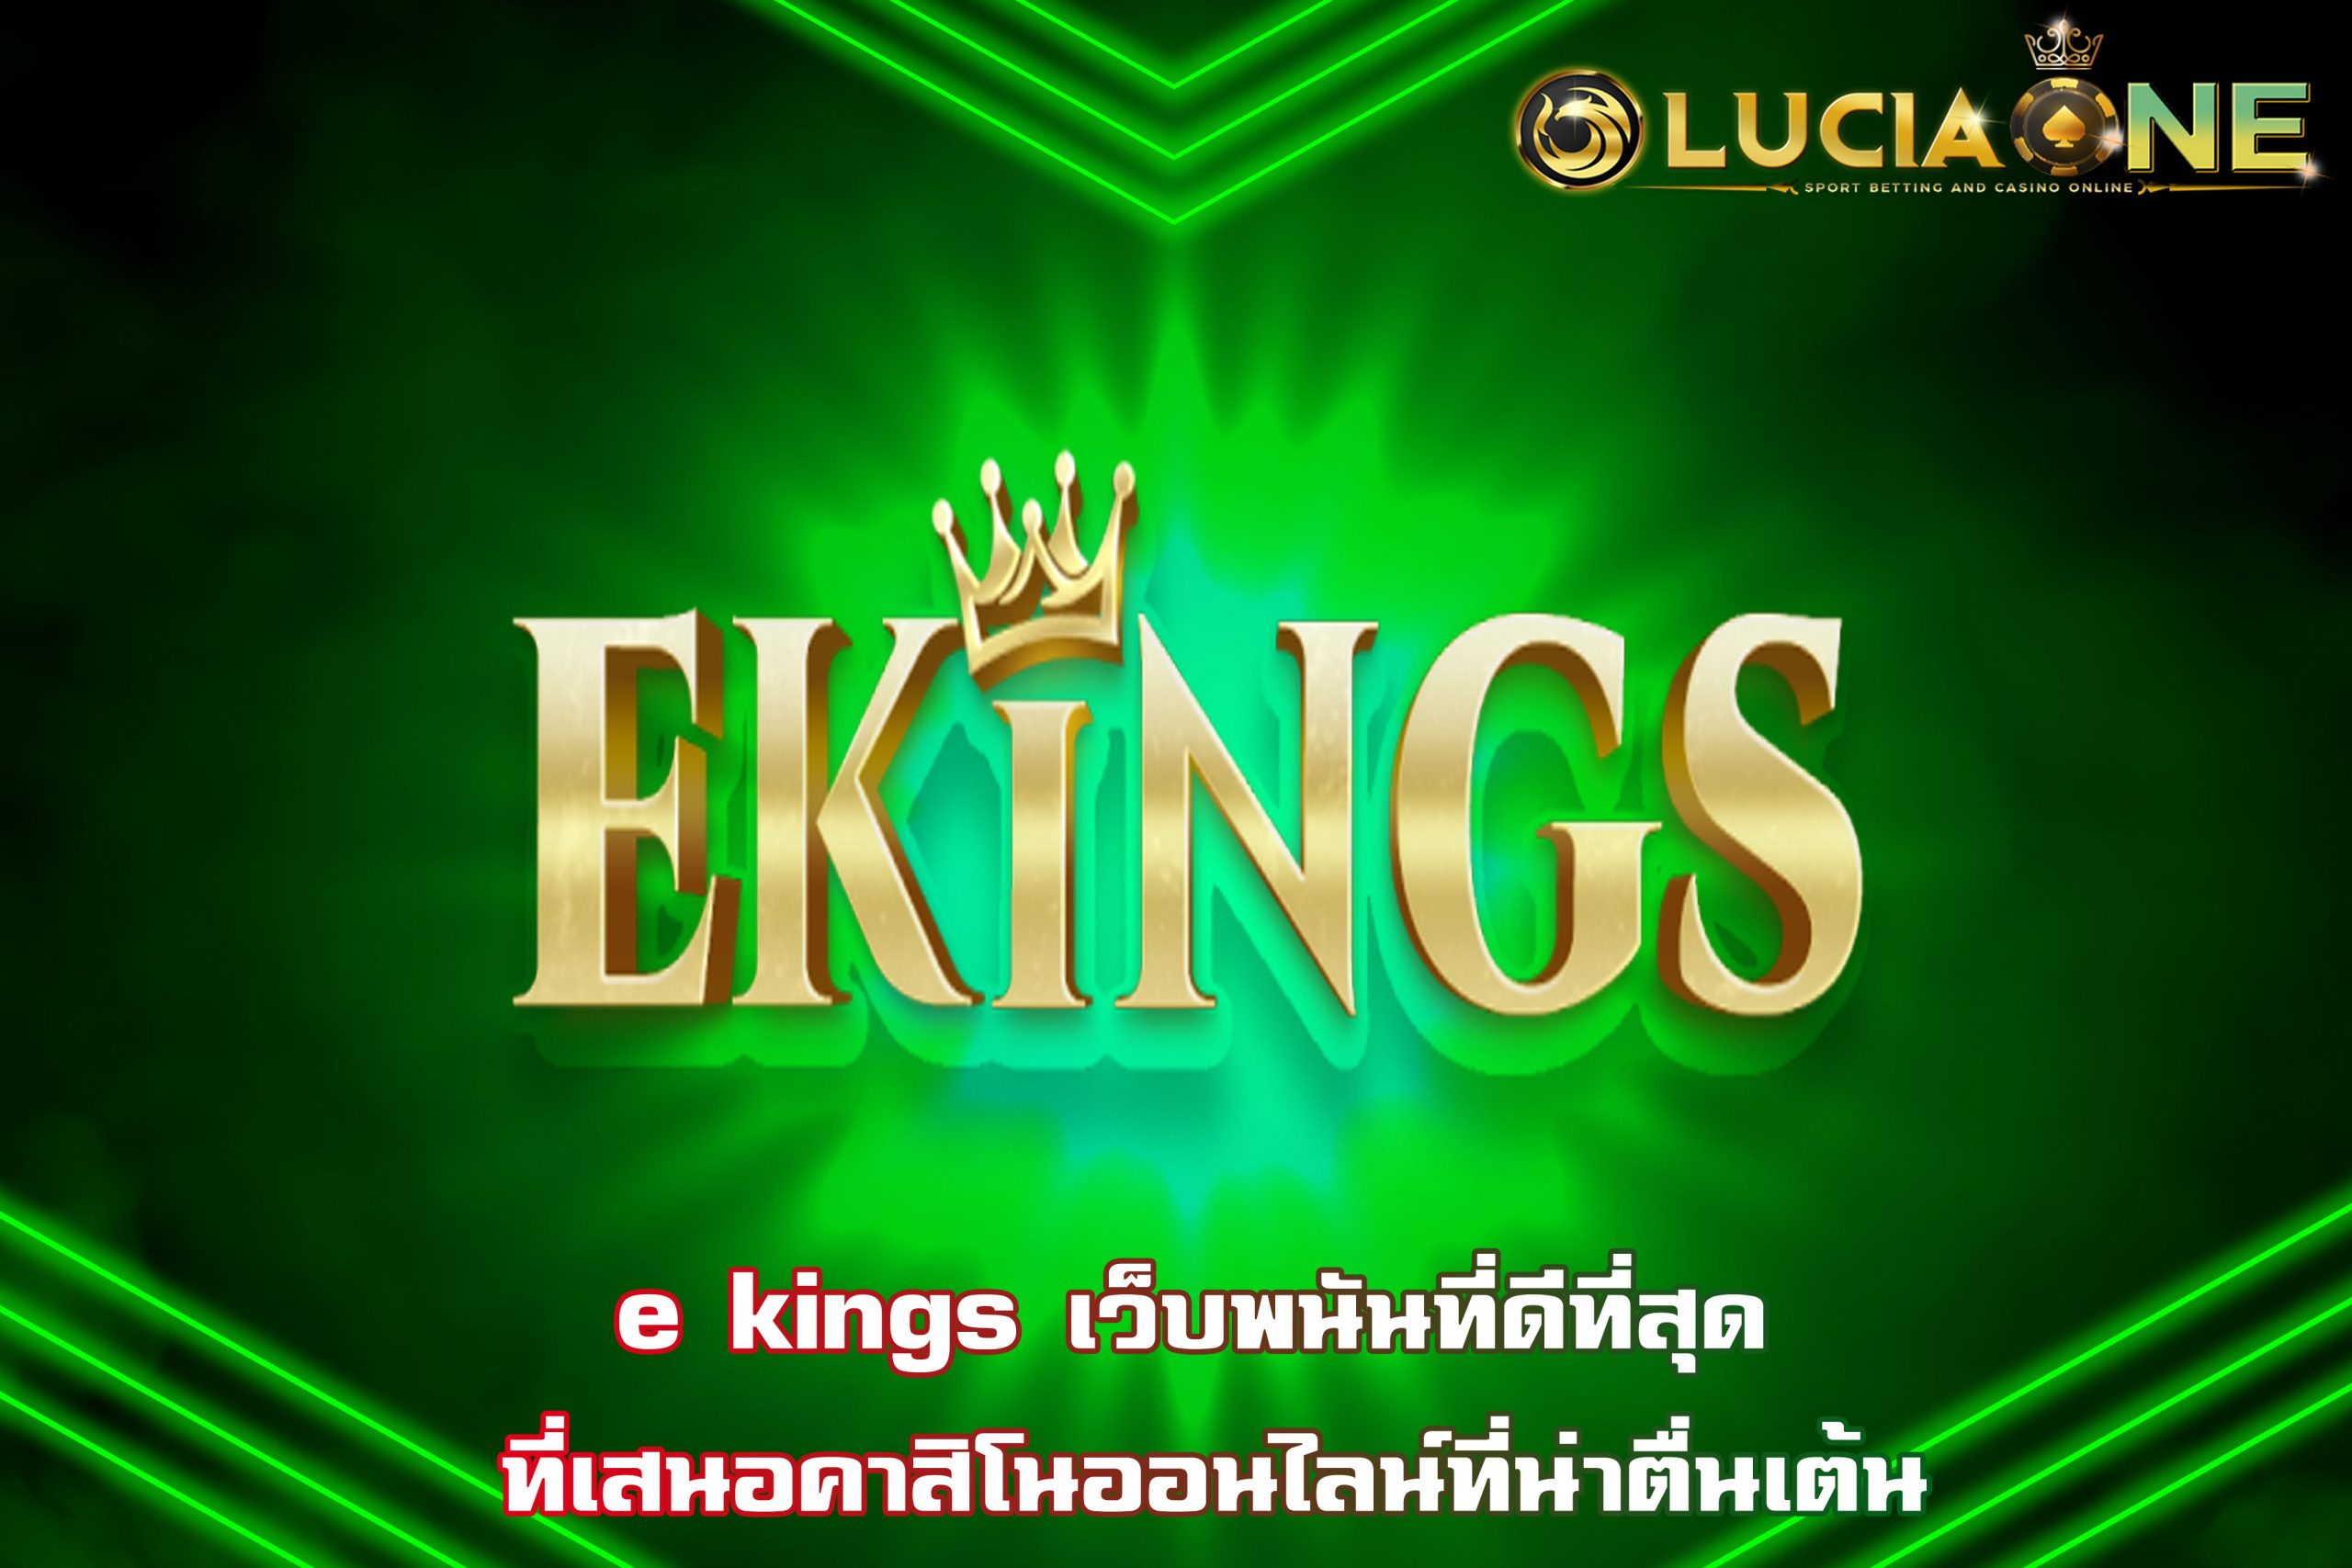 e kings เว็บพนันที่ดีที่สุด ที่เสนอคาสิโนออนไลน์ที่น่าตื่นเต้น